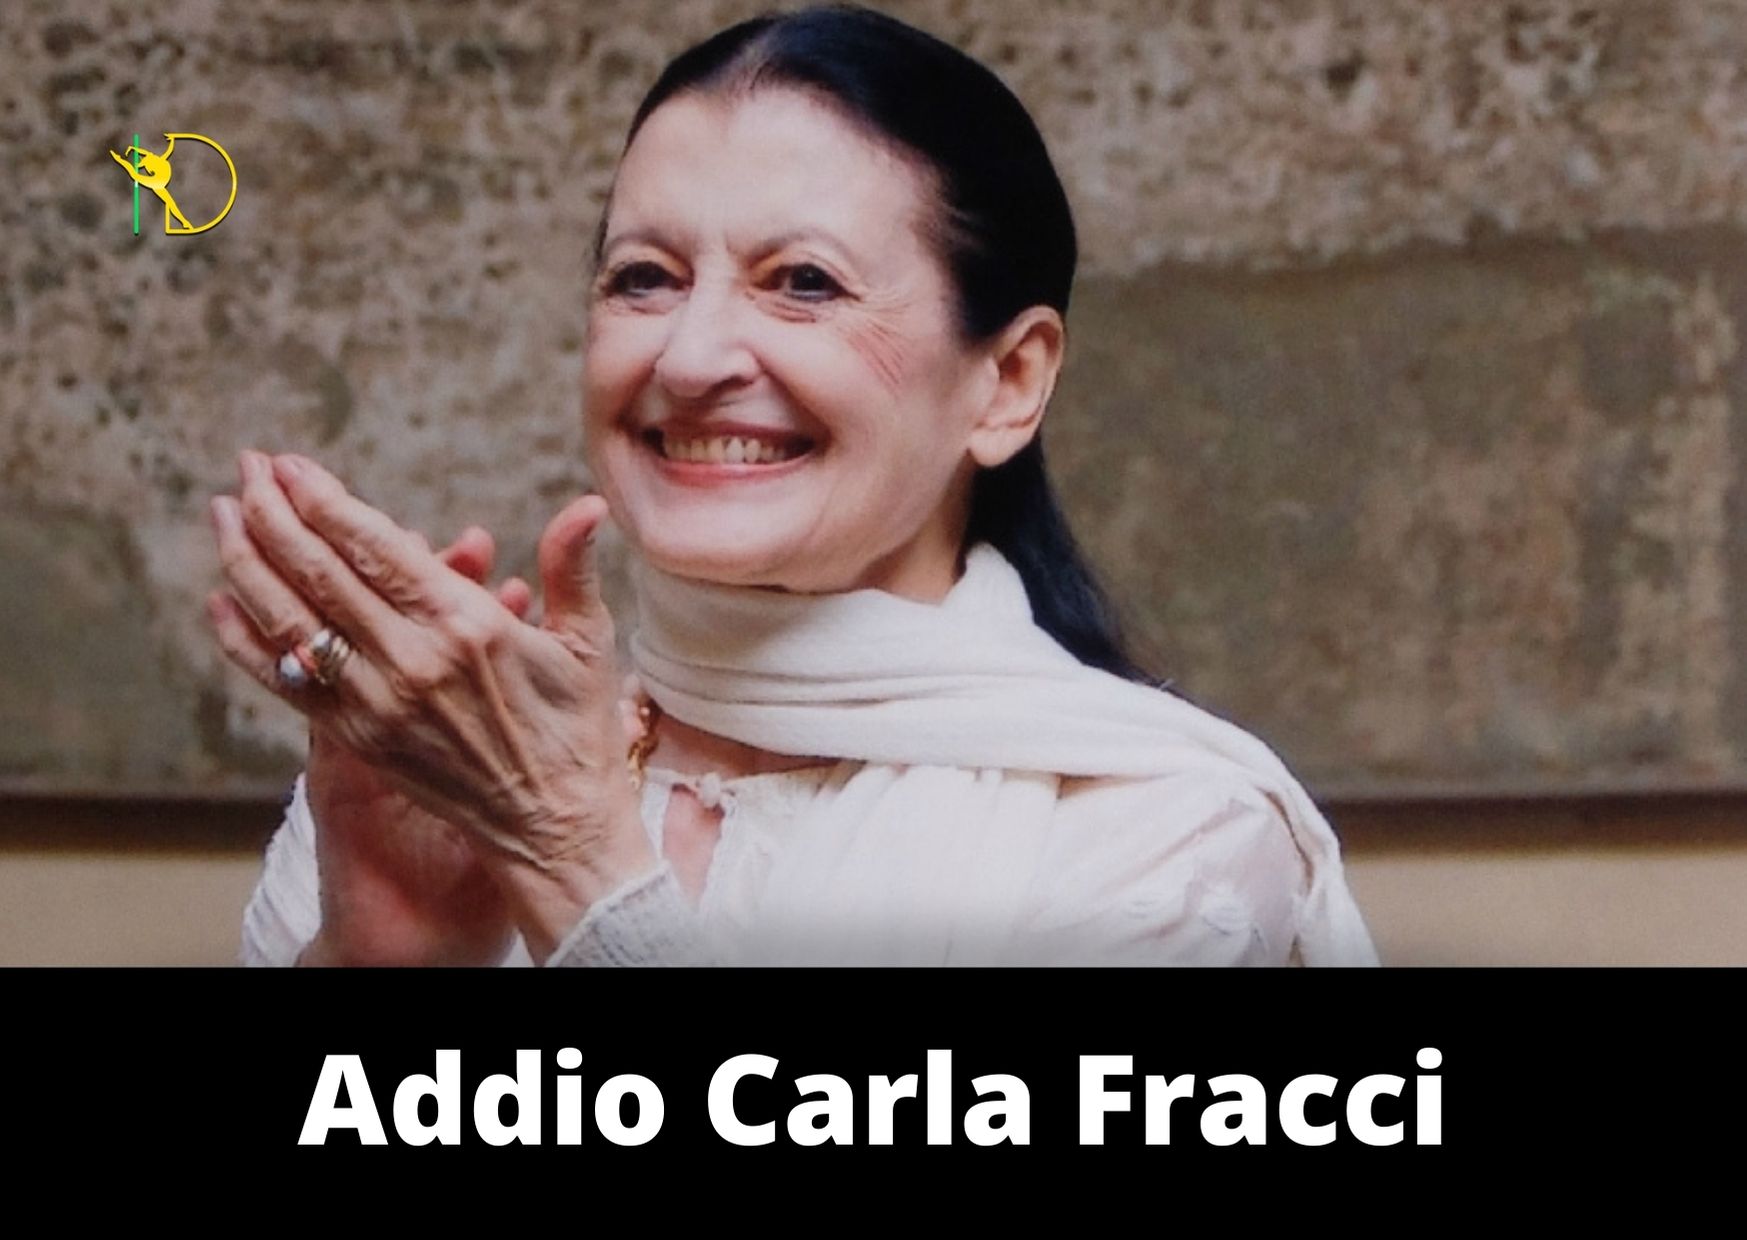 Addio Carla Fracci